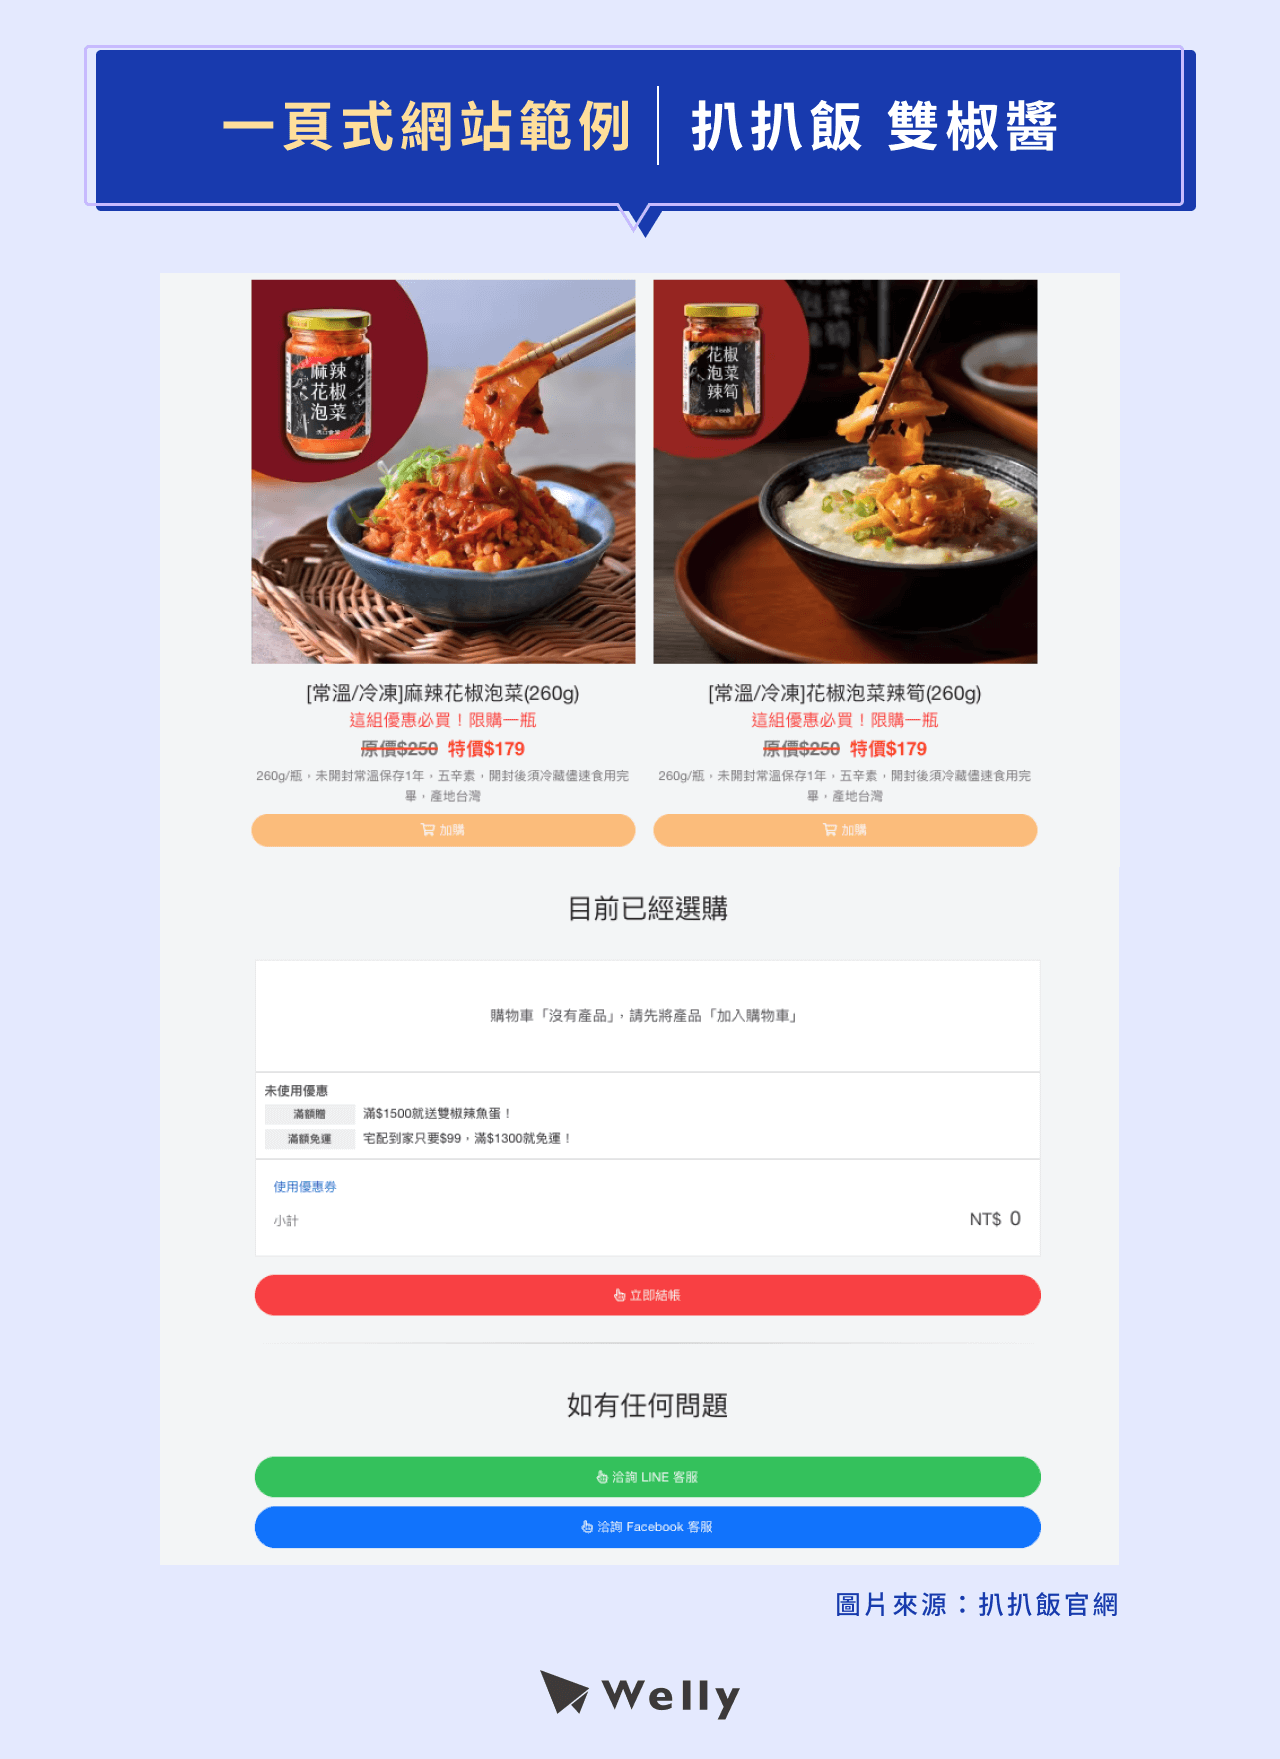 一頁式網站範例：《扒扒飯 雙椒醬》